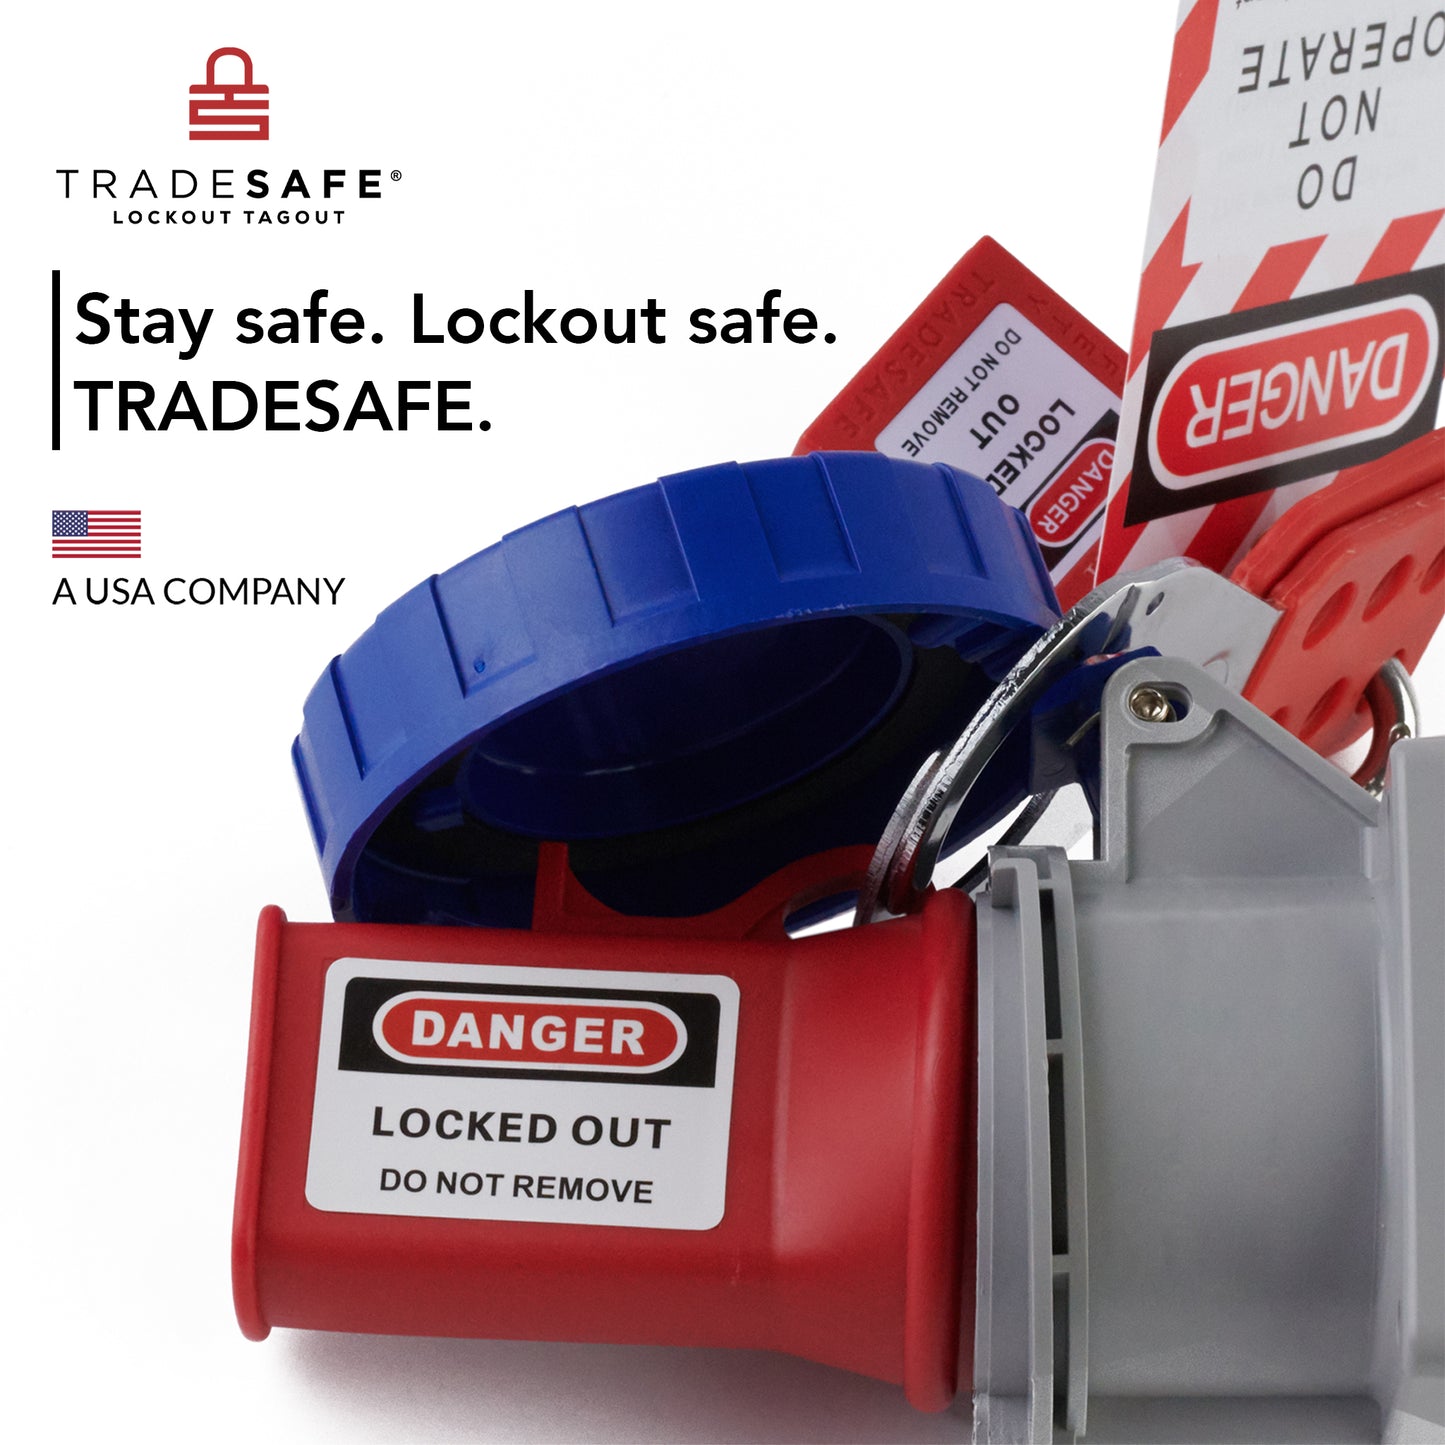 lockout tagout brand image; stay safe lockout safe tradesafe